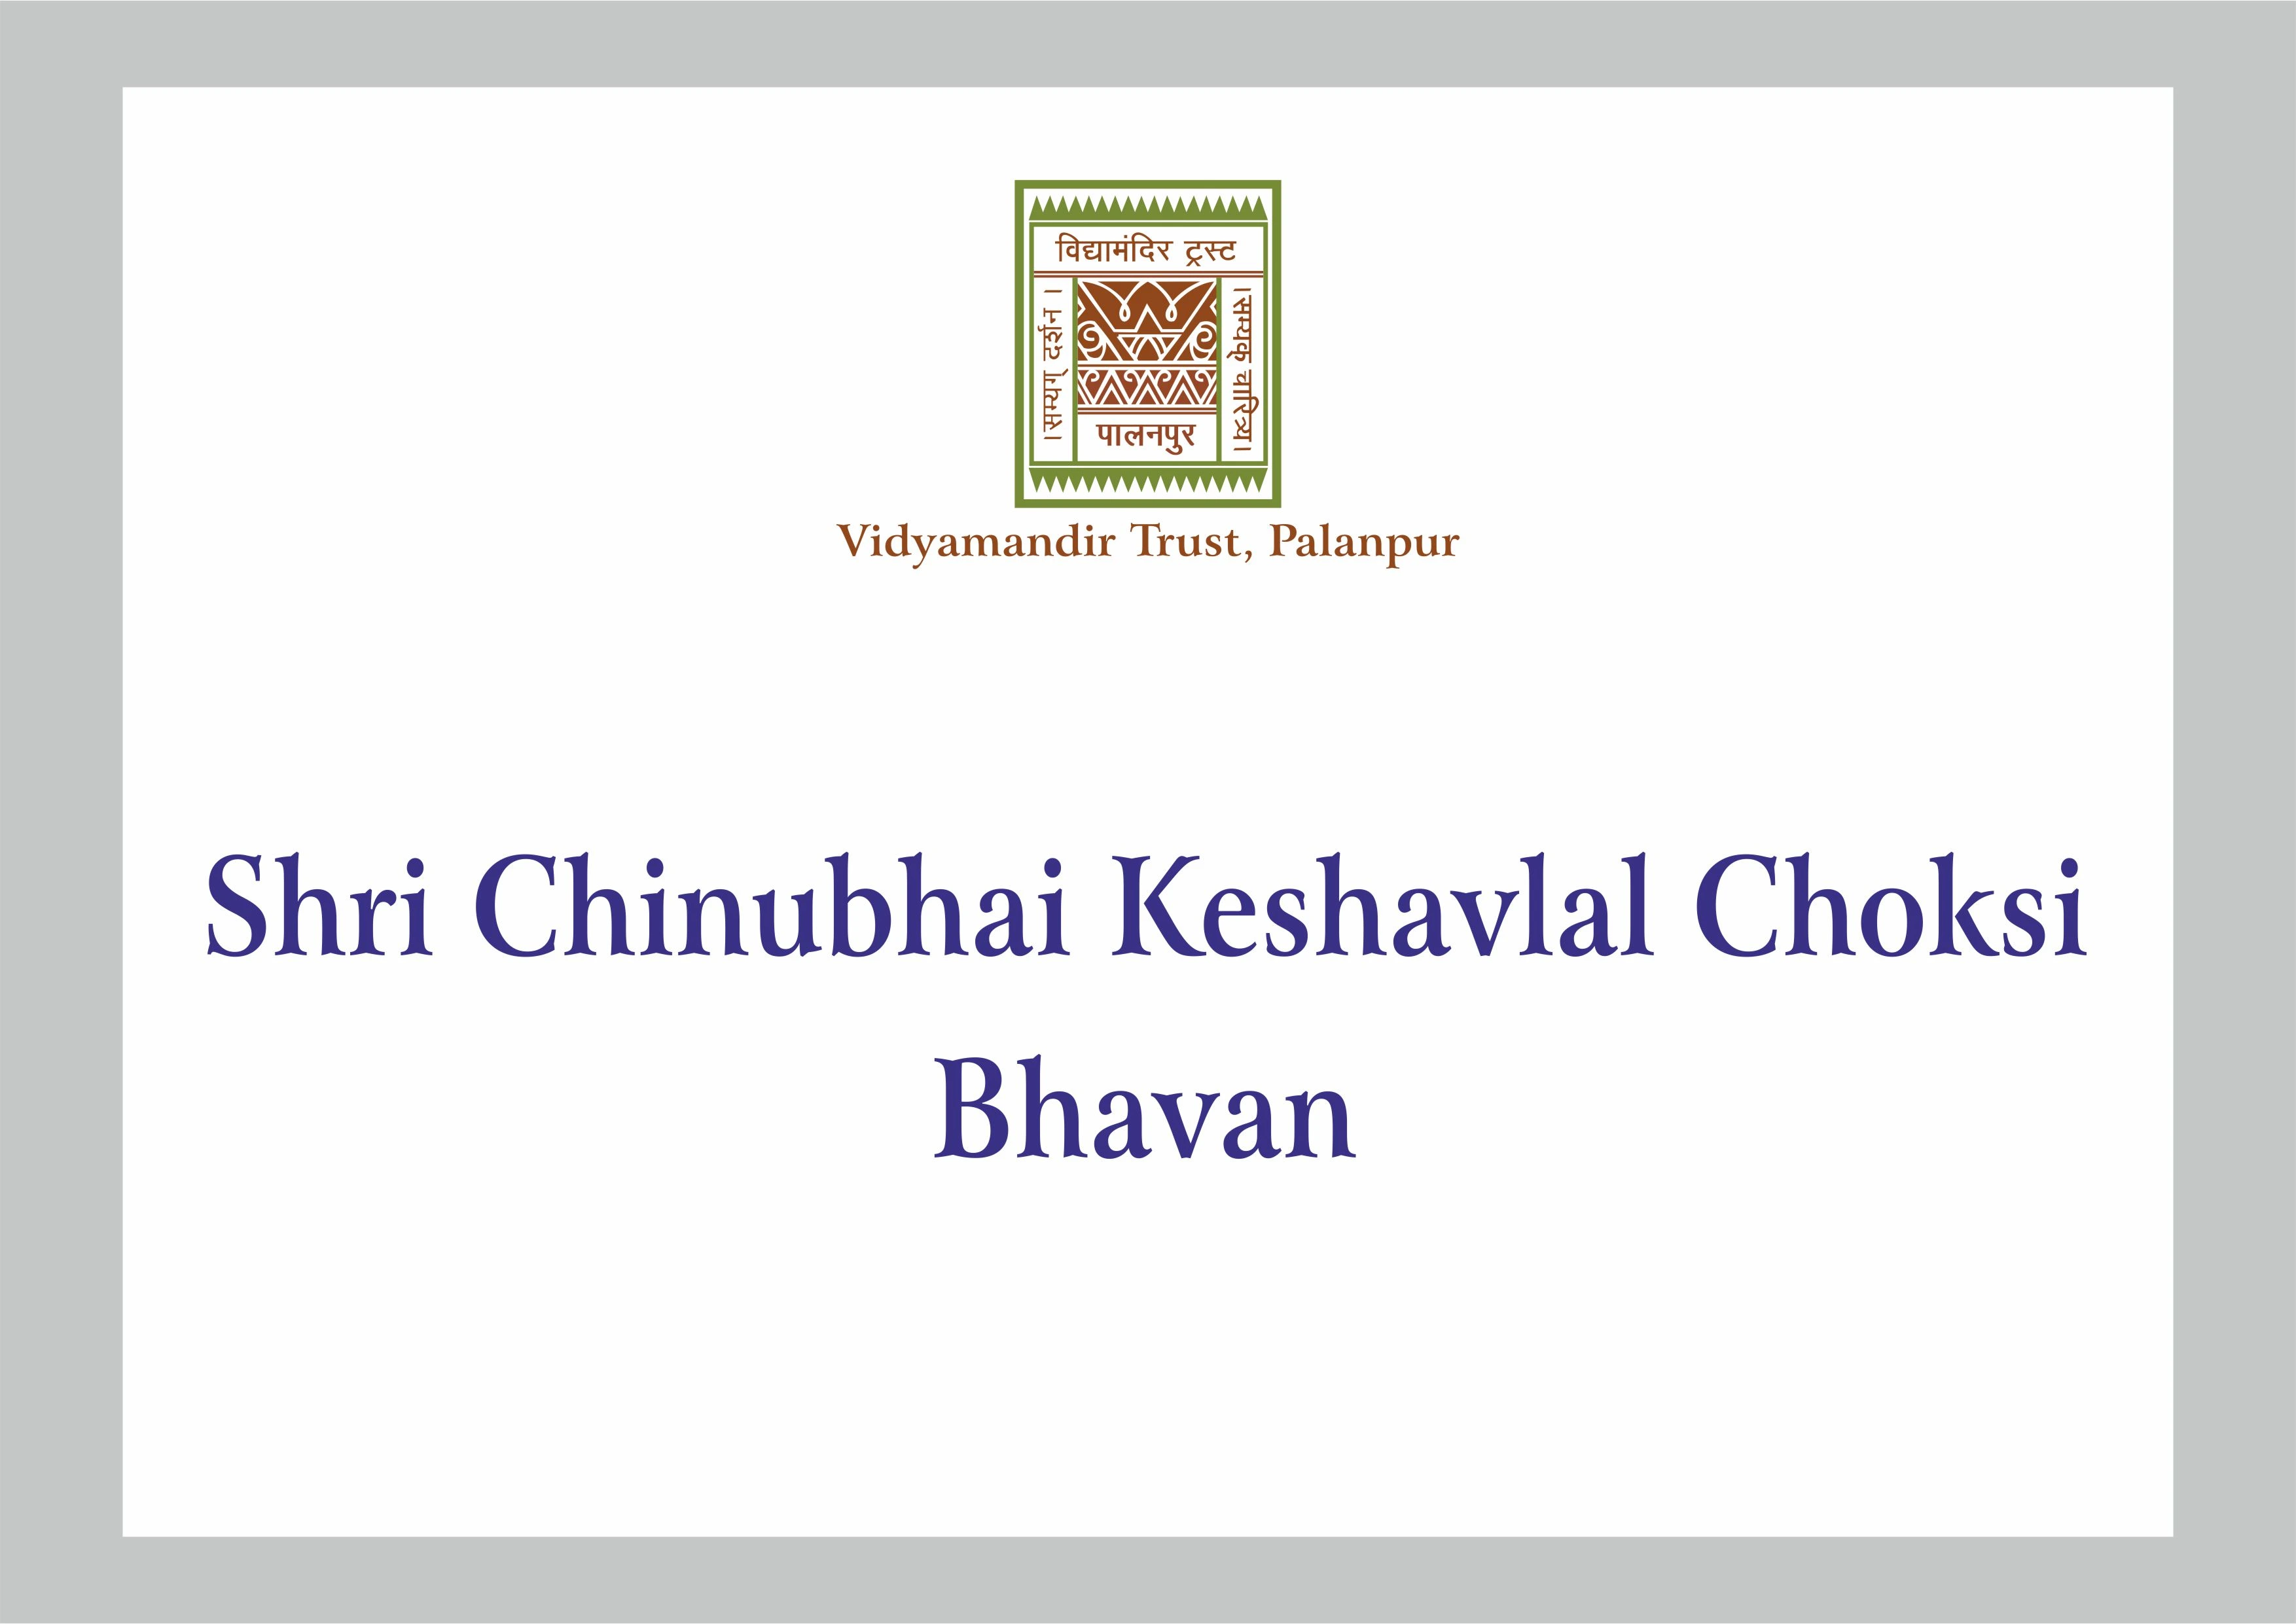 Shri Chinubhai Keshavlal Choksi Bhavan - Building Photo